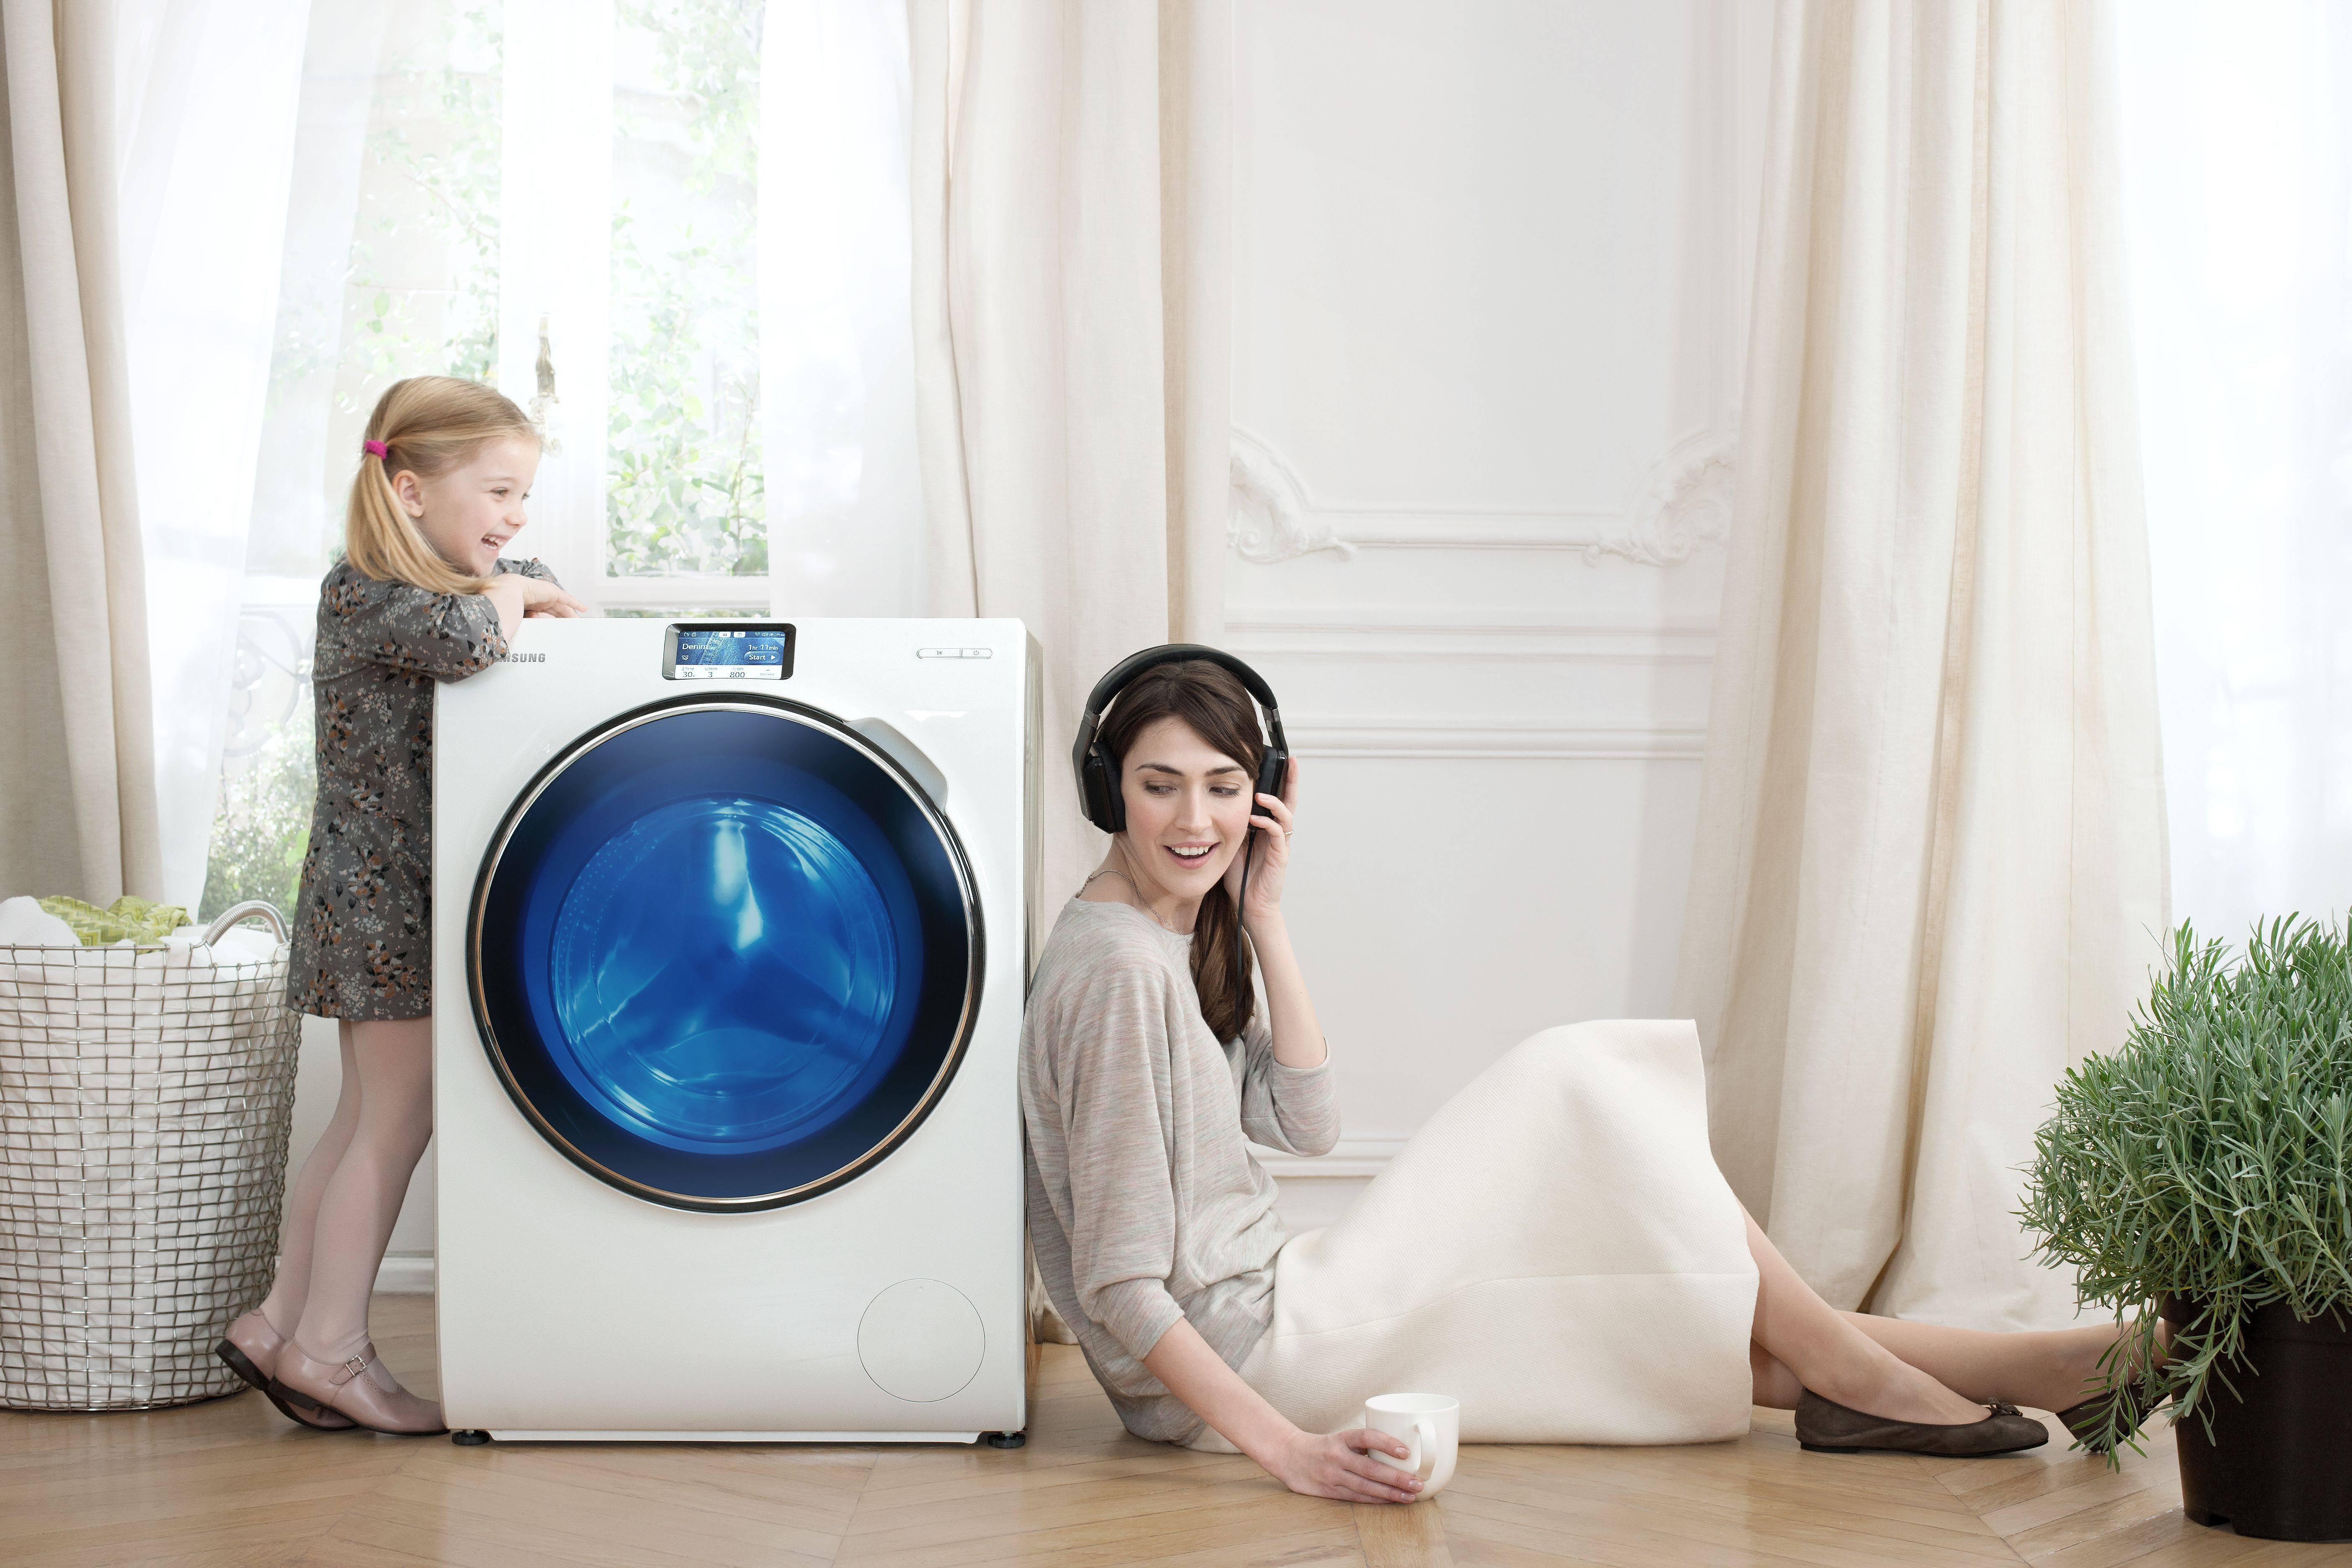 Узкие стиральные машины: топ-8 моделей от узнаваемых производителей